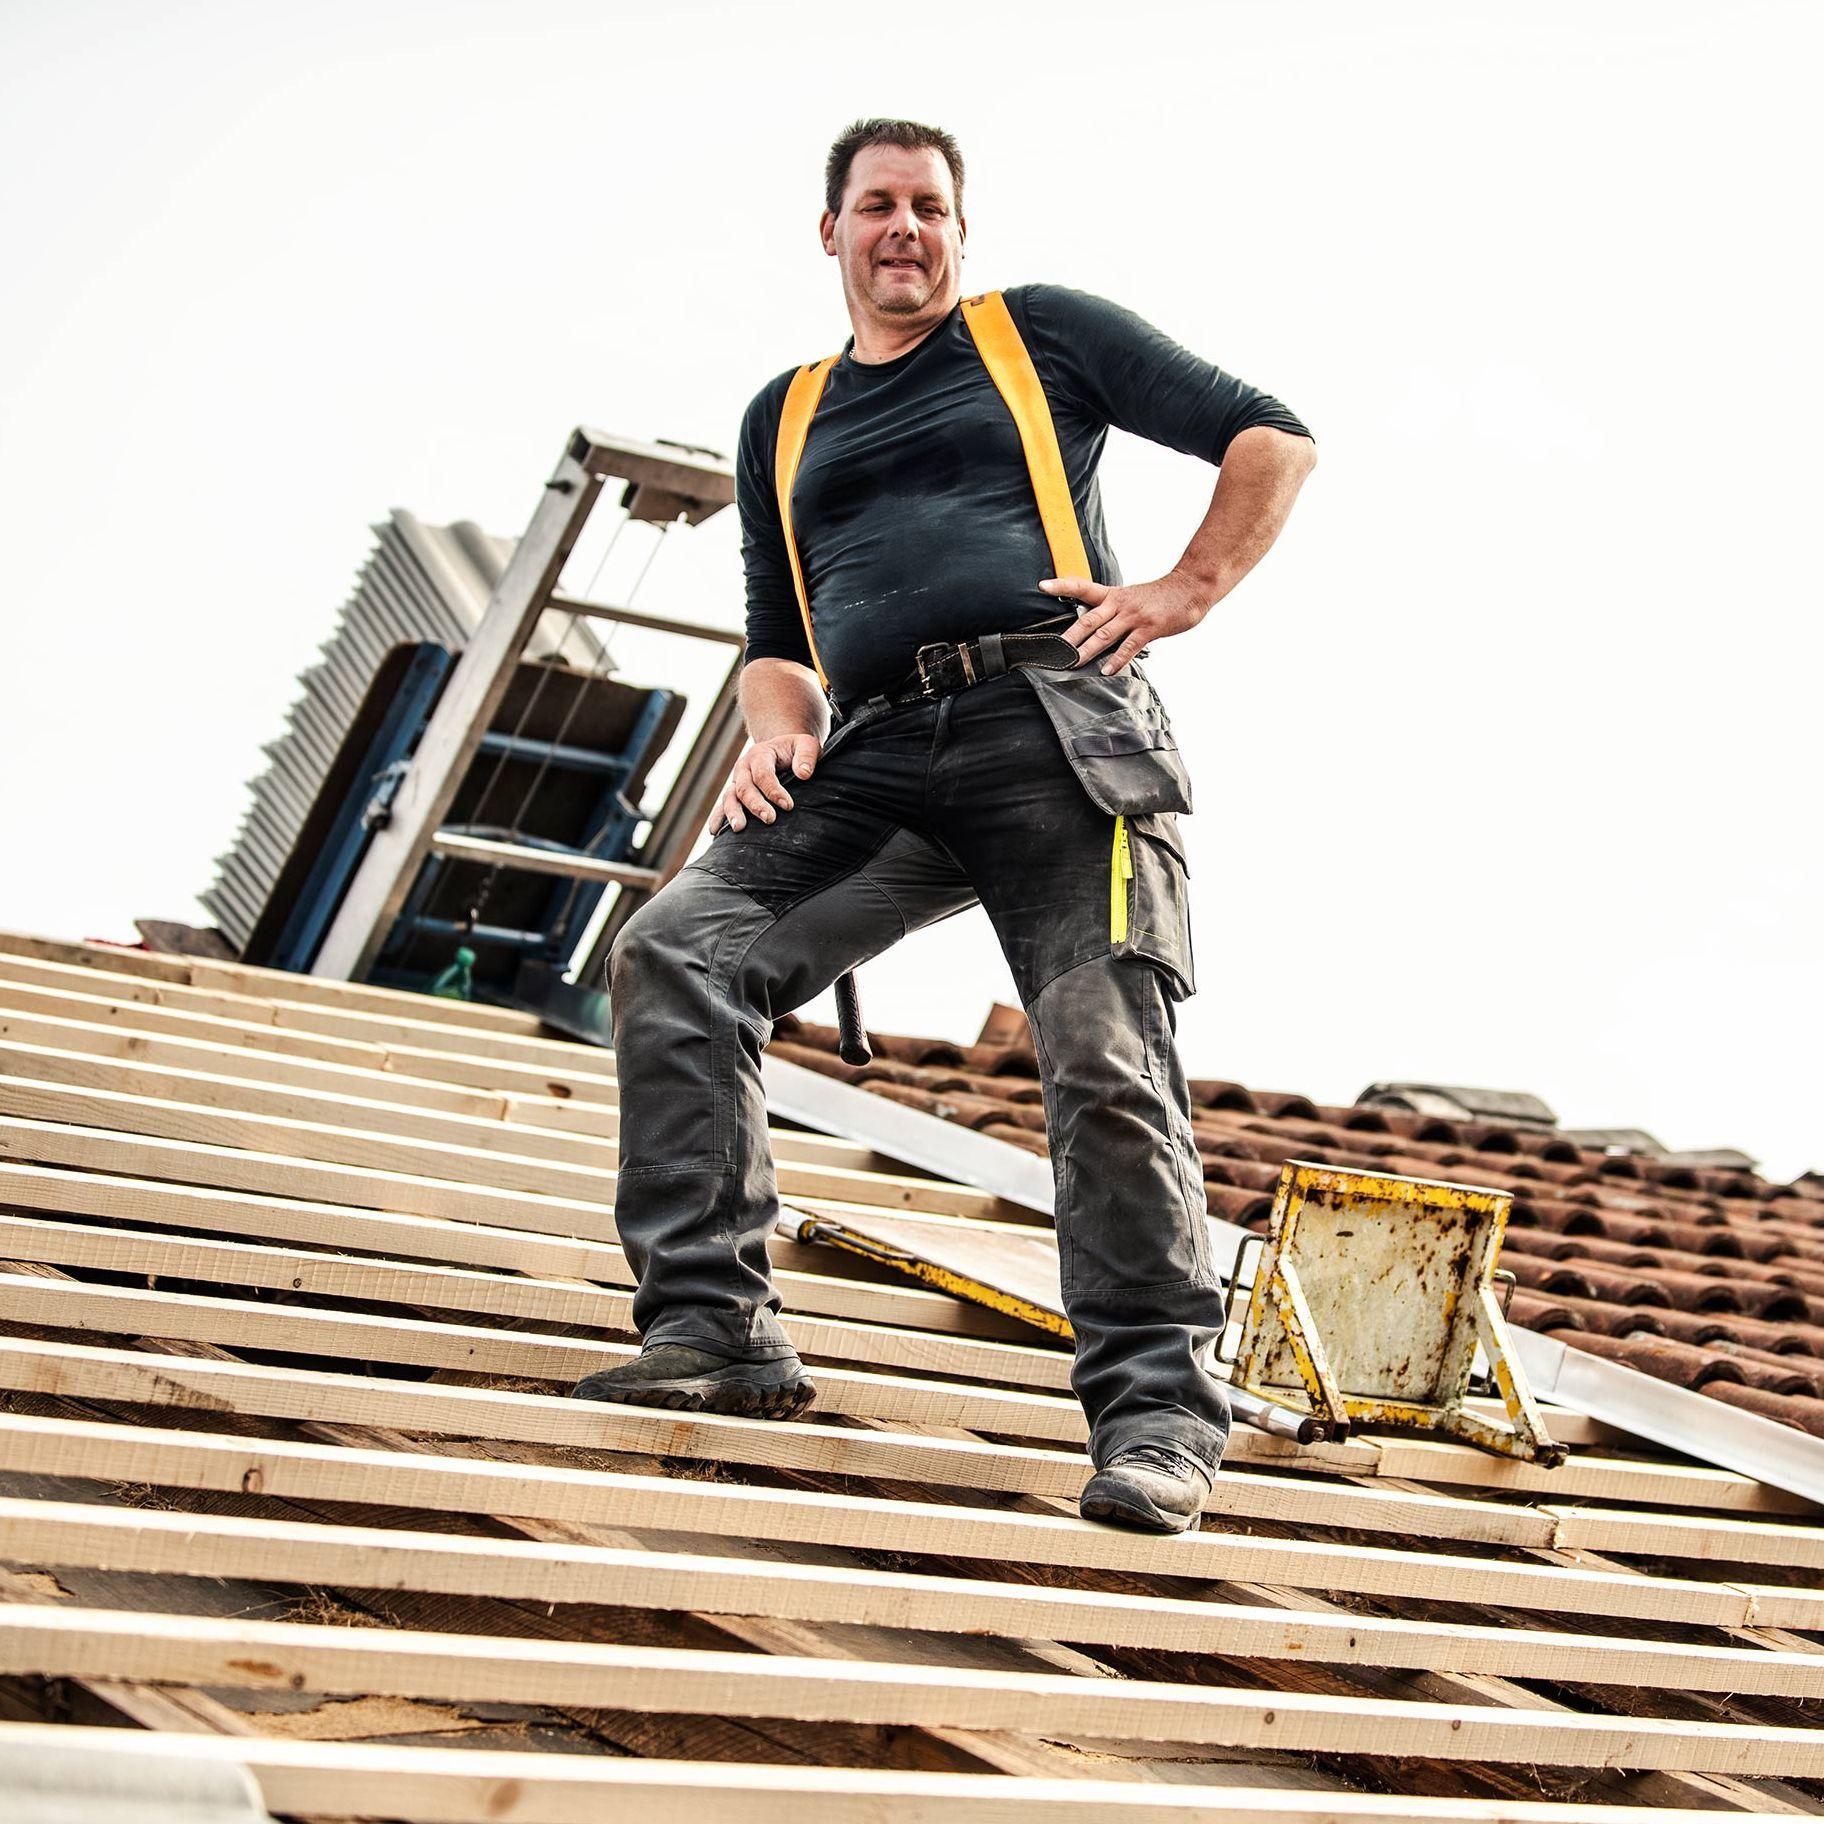 Ein Dachdecker steht selbstbewusst auf einem teilweise gedeckten Dach. Er trägt Arbeitskleidung mit einem schwarzen Shirt und gelben Hosenträgern. Im Hintergrund ist eine Leiter und weiteres Werkzeug zu sehen, das er für seine Arbeit benötigt.